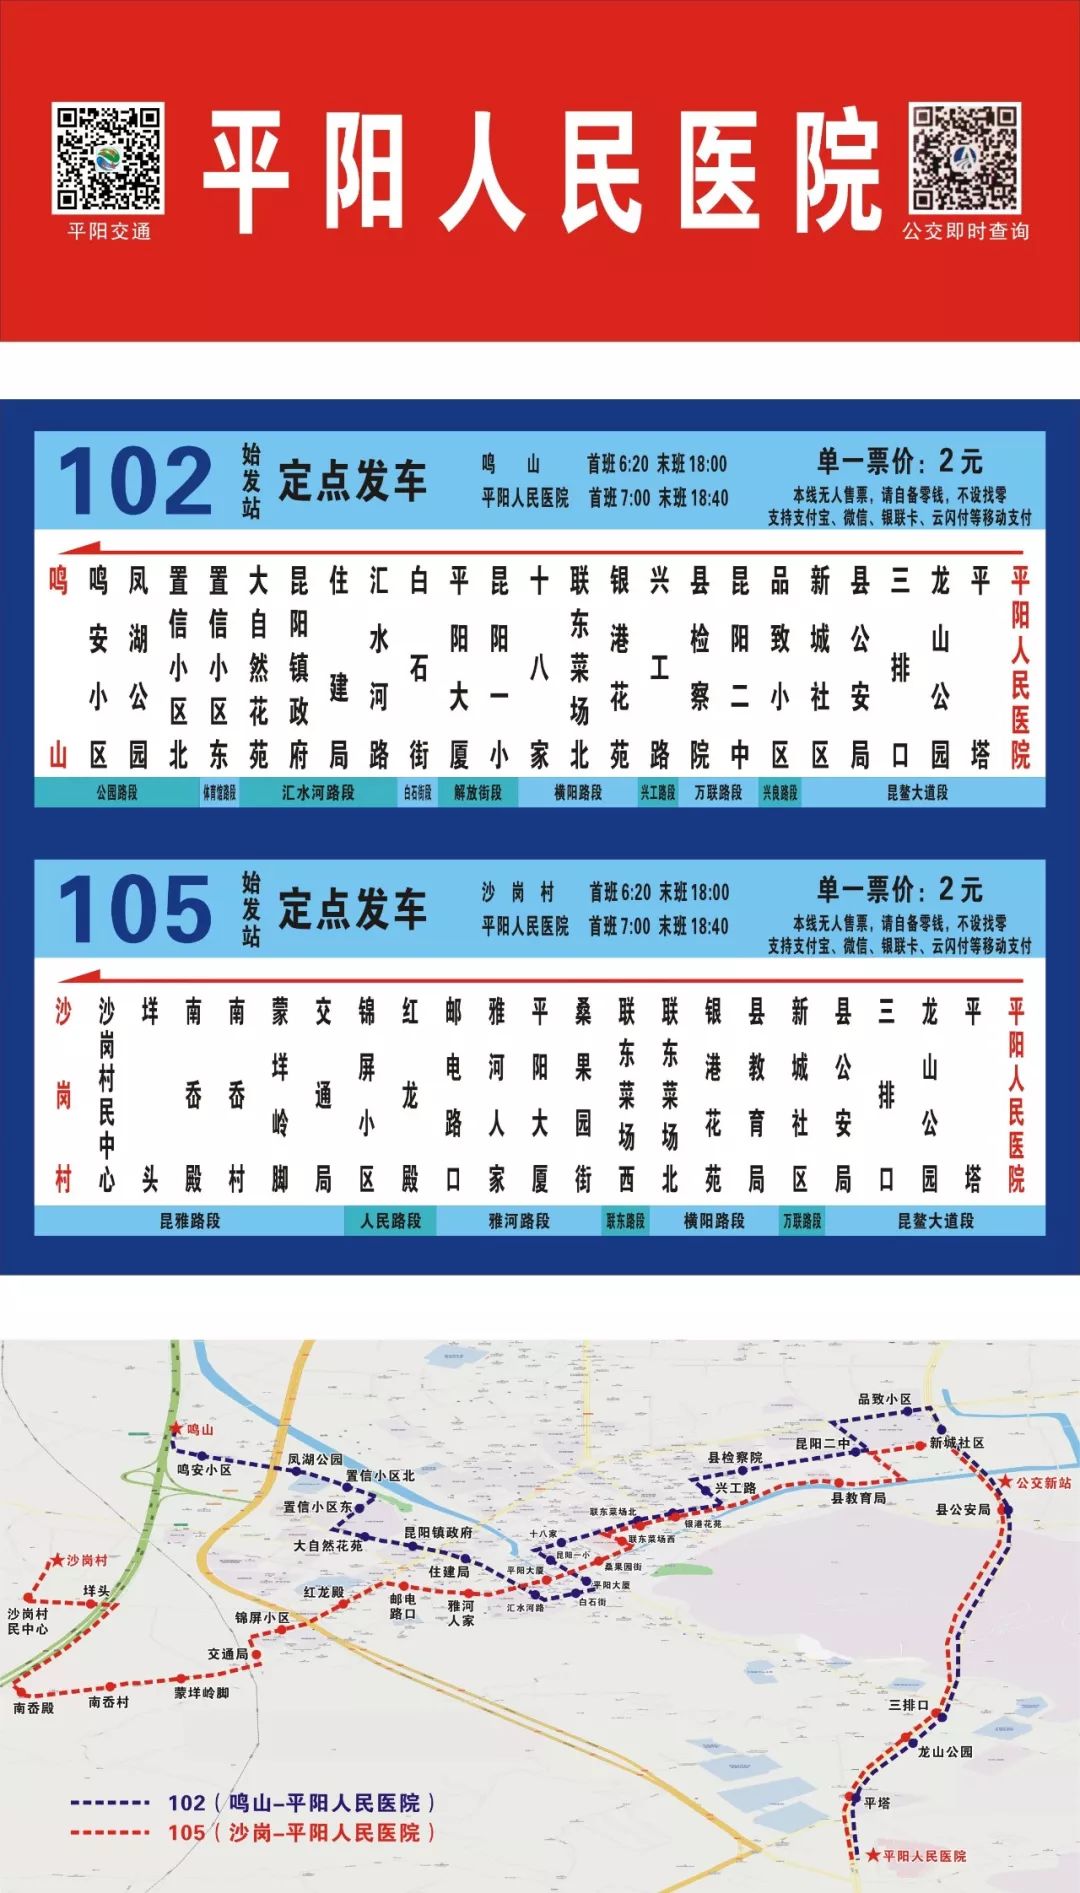 102105路公交始发平阳县人民医院开通啦